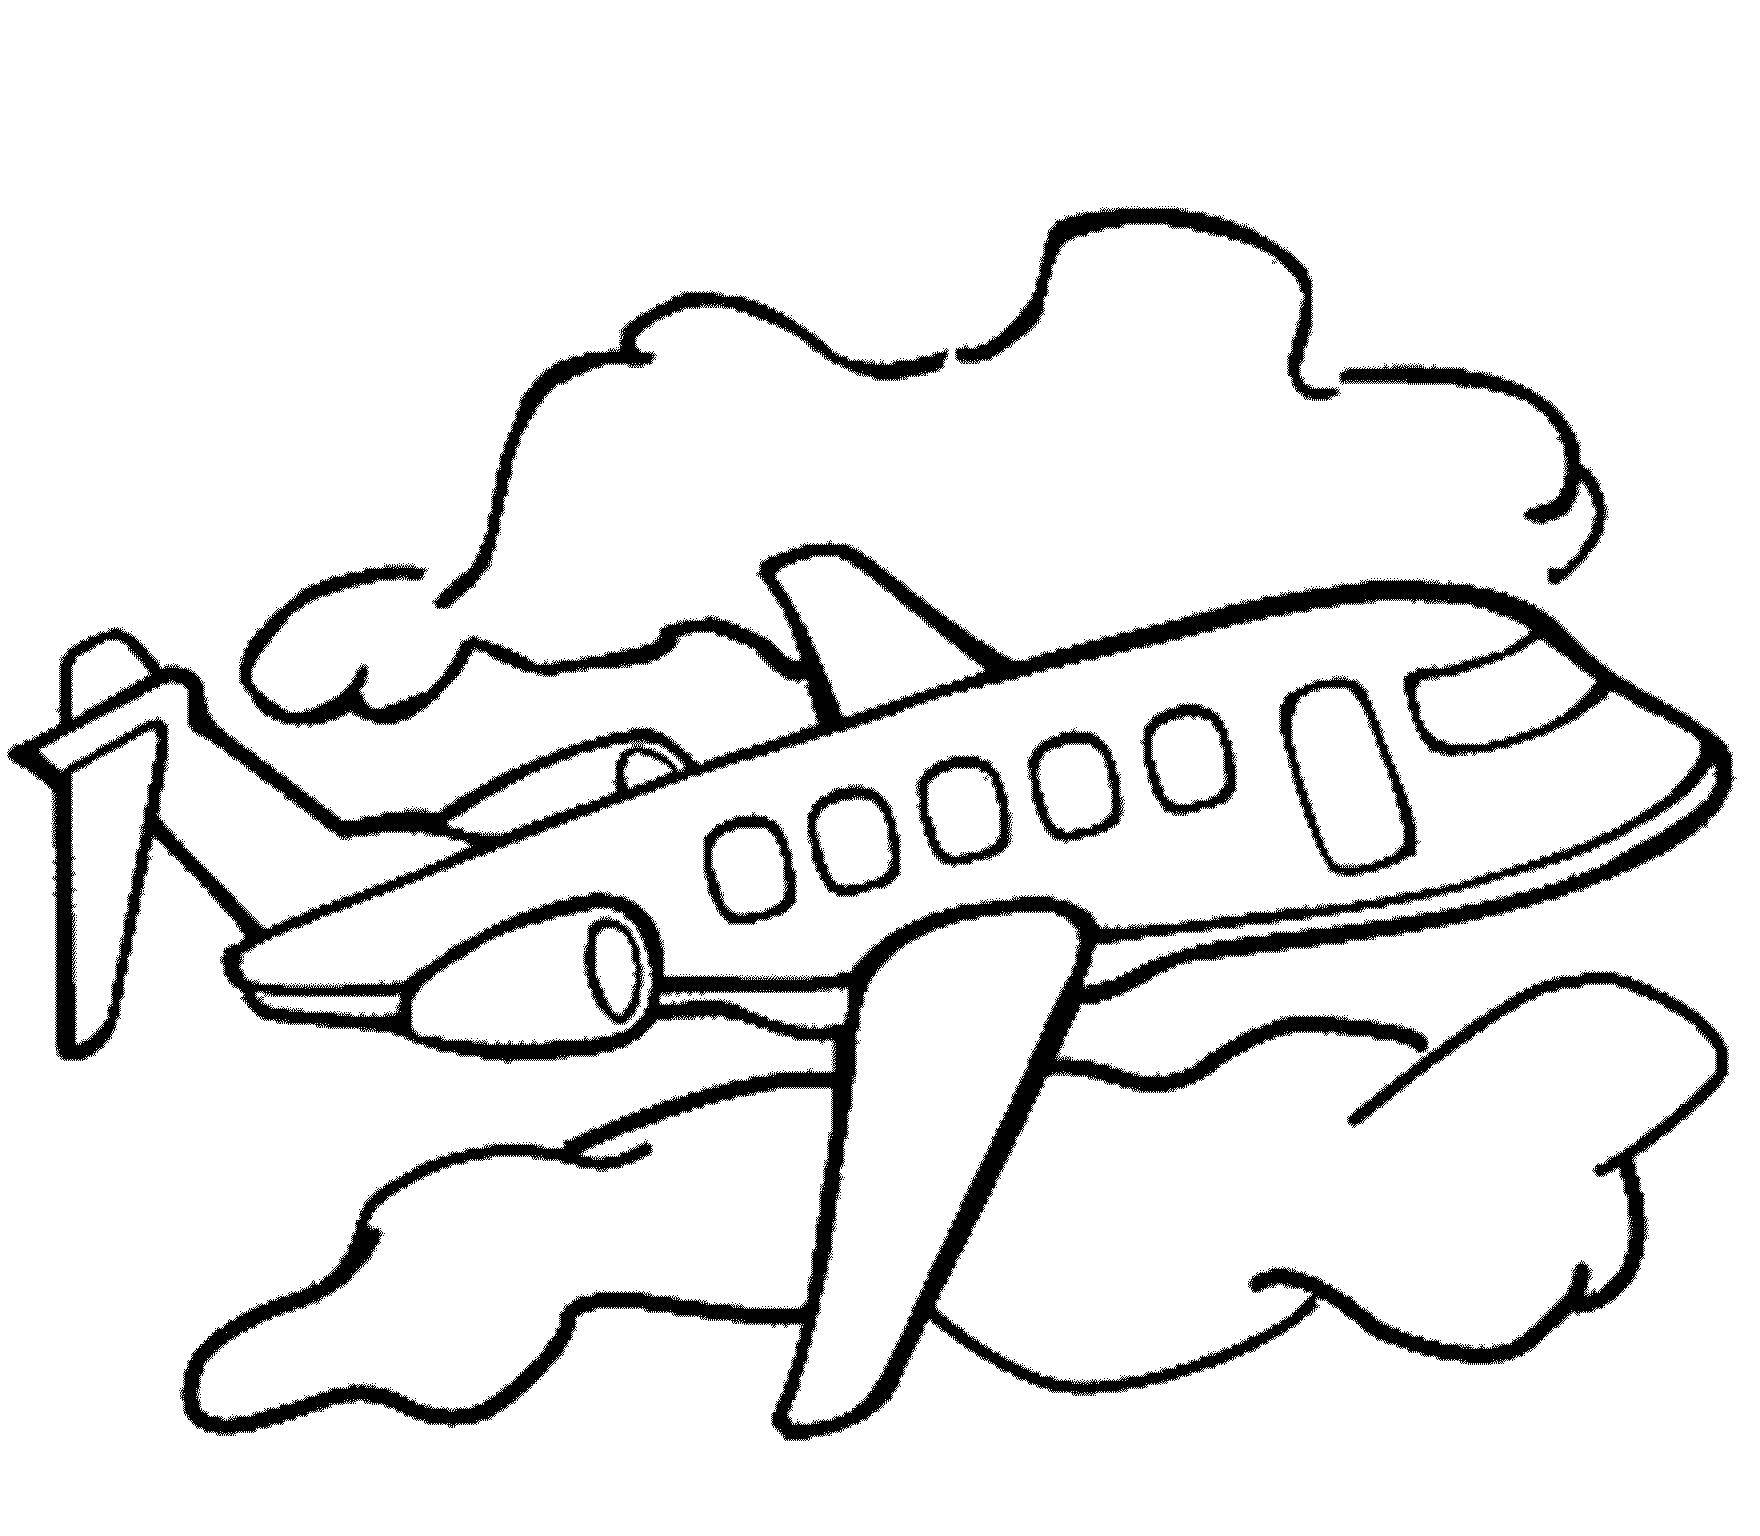 Раскраски для детей старшей группы. Раскраски. Транспорт. Самолет раскраска для детей. Воздушный транспорт раскраски для детей. Раскраска "самолётики".